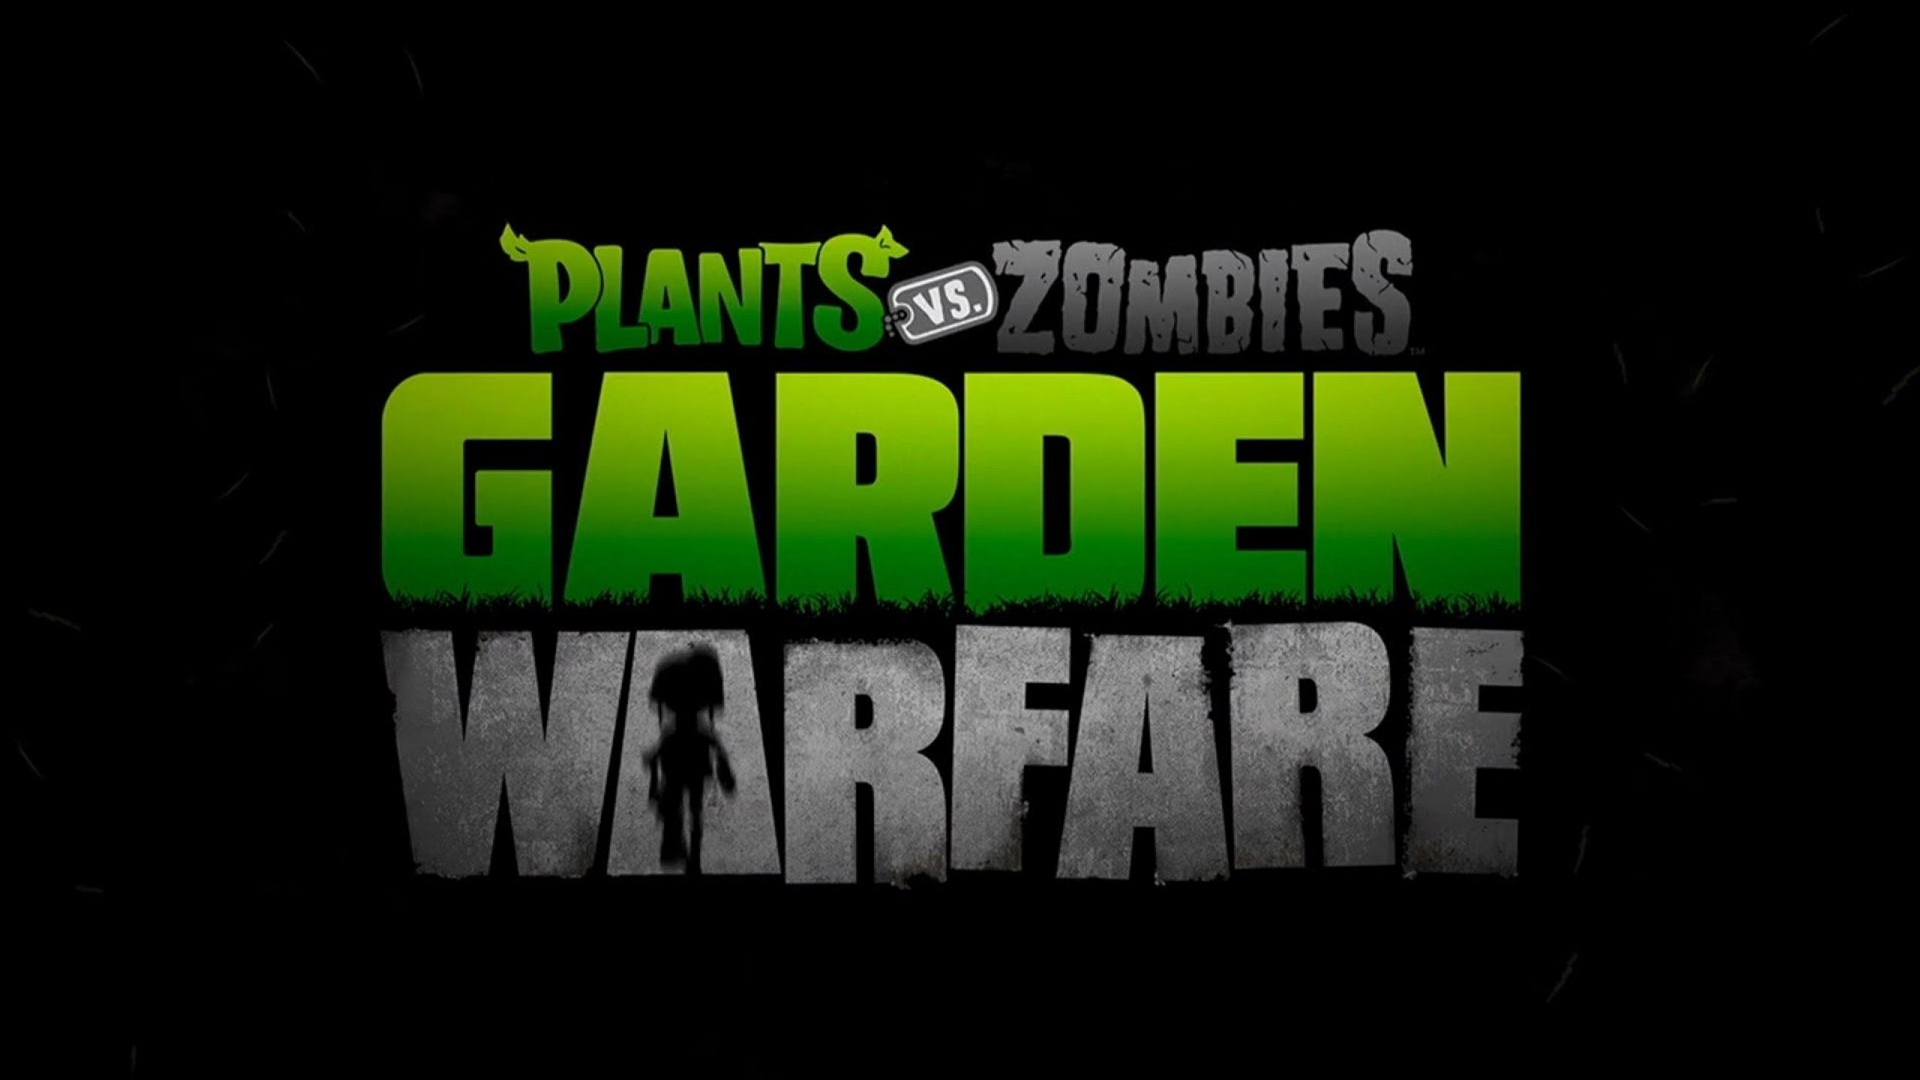 Video Game Plants vs. Zombies: Garden Warfare HD Wallpaper